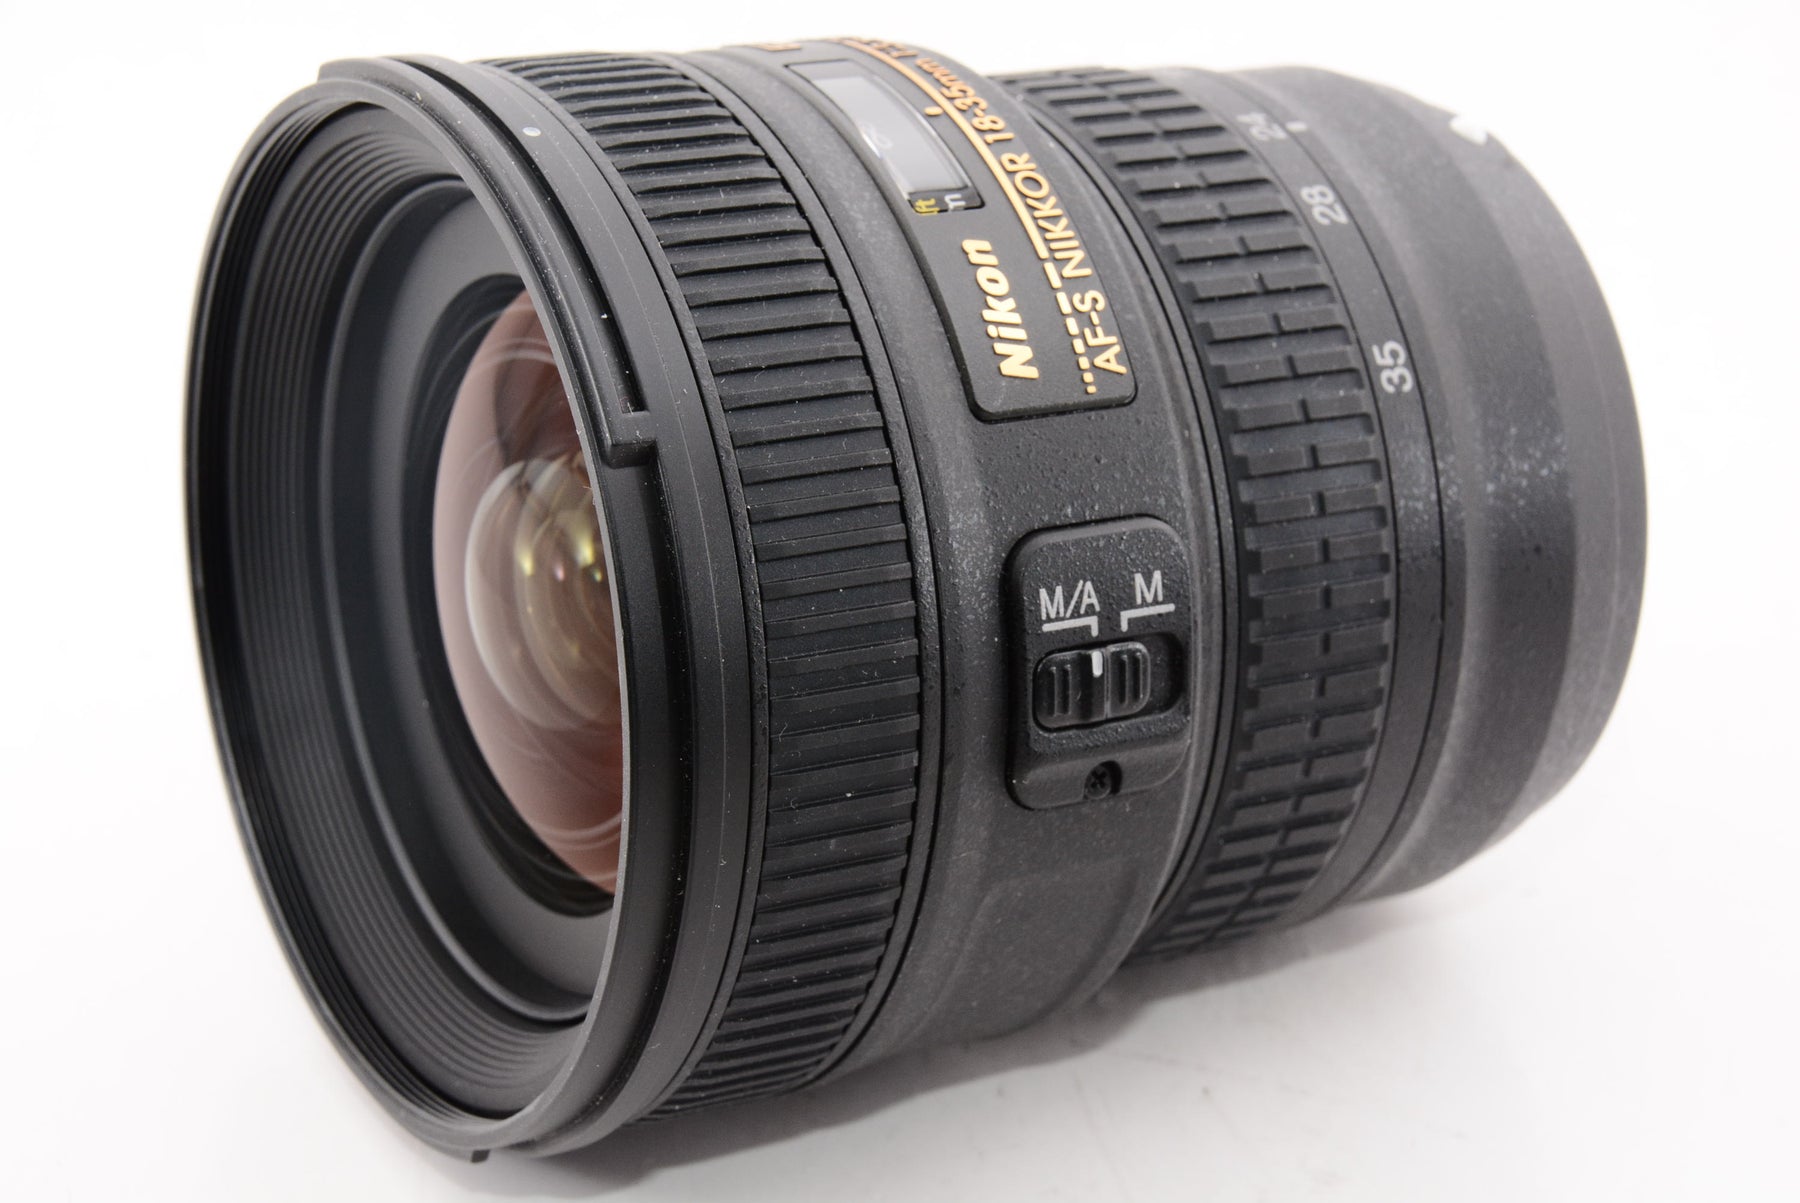 外観特上級】Nikon 超広角ズームレンズ AF-S NIKKOR 18-35mm f/3.5-4.5